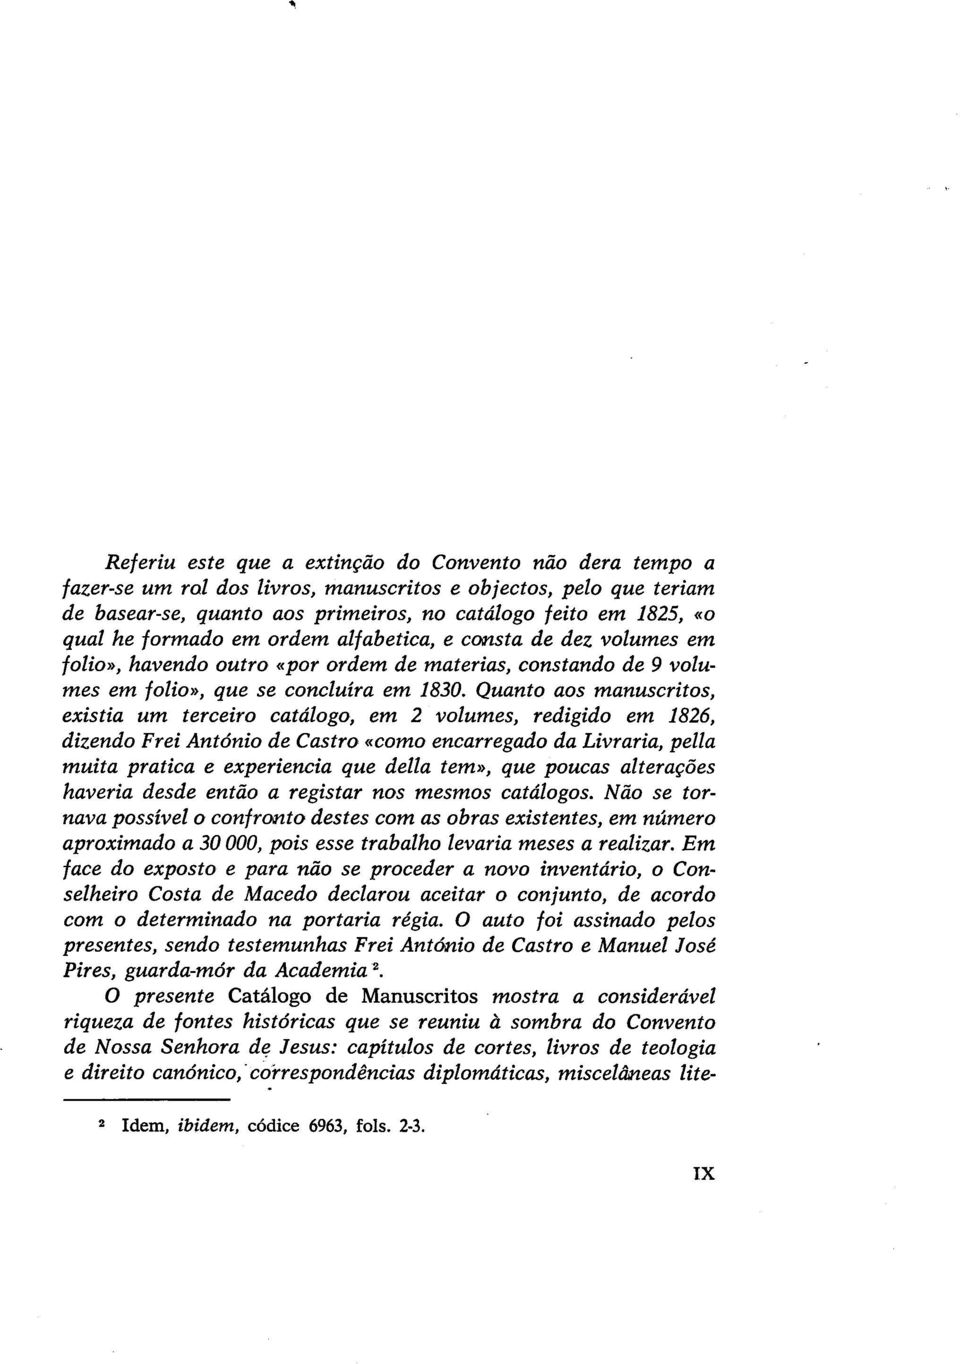 Quanto aos manuscritos, existia um terceiro catálogo, em 2 volumes, redigido em 1826, dizendo Frei António de Castro «como encarregado da Livraria, pella muita pratica e experiencia que della tem»,